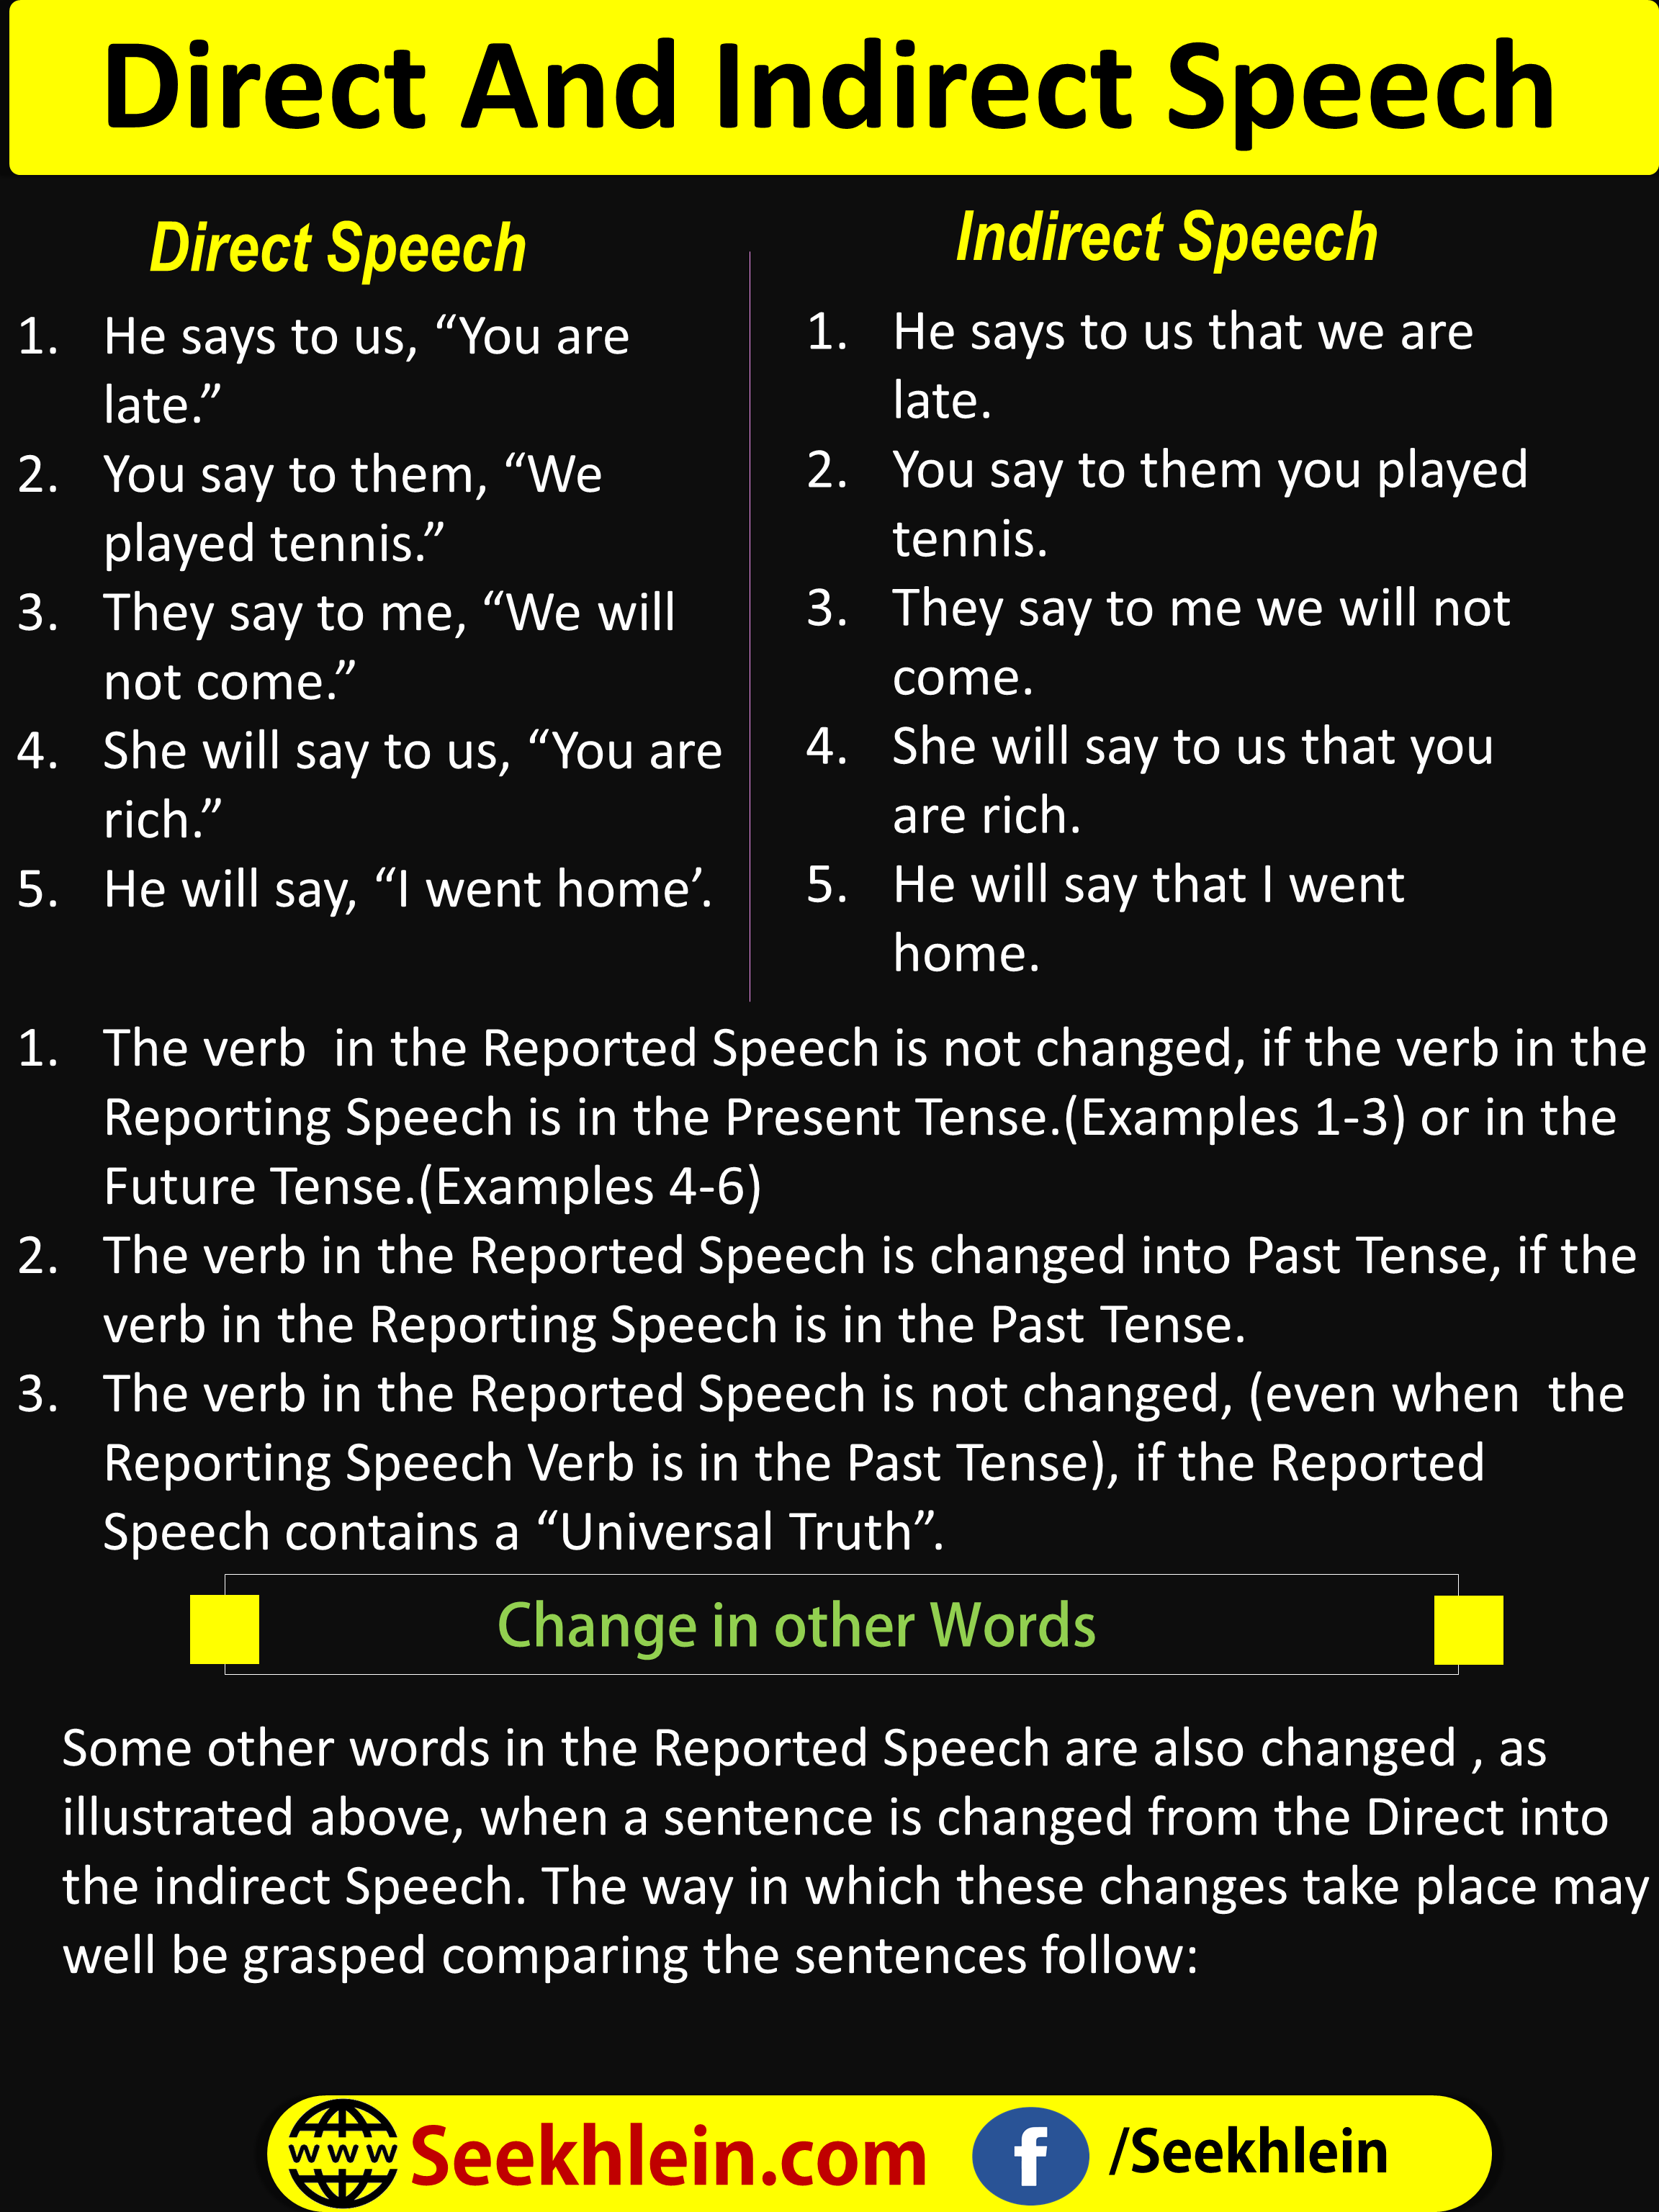 Direct Speech Indirect Speech